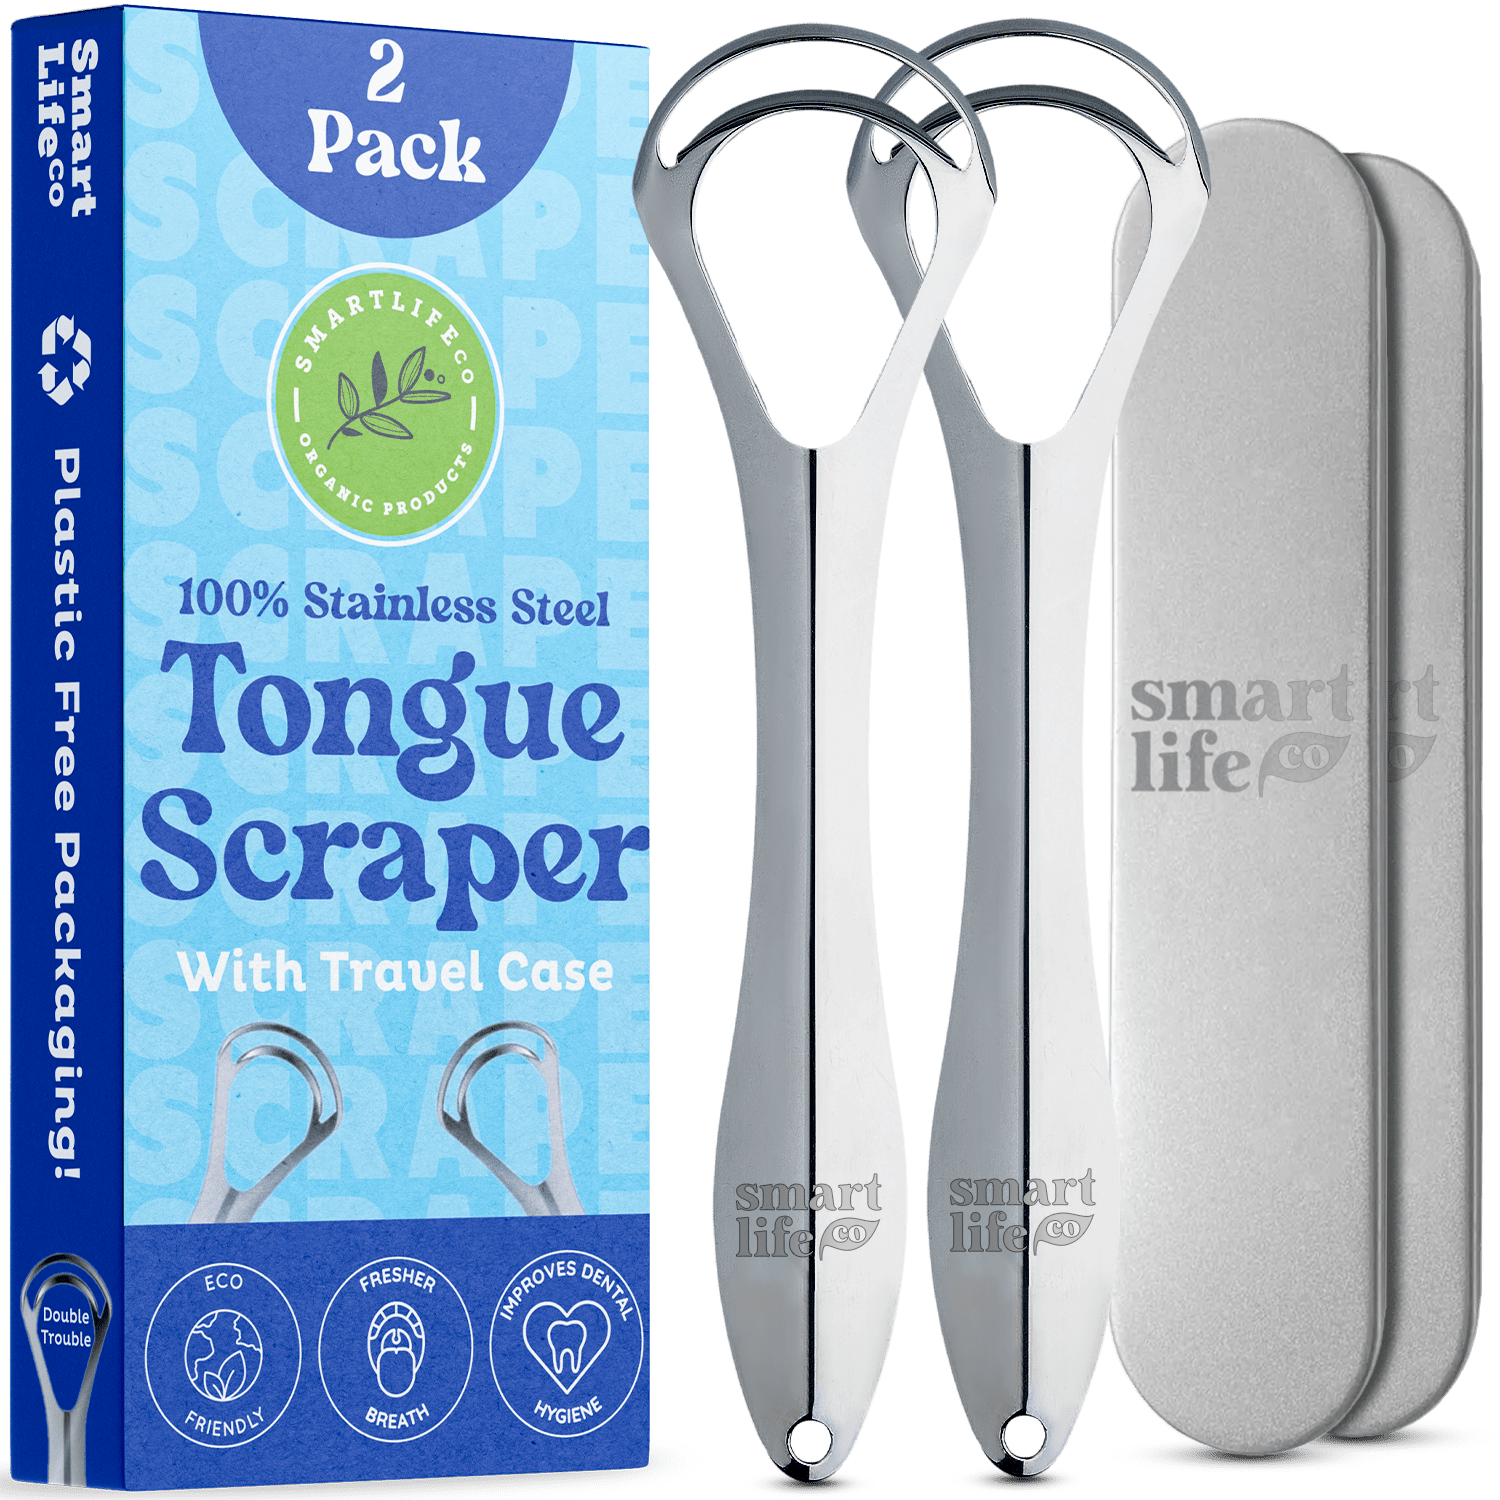 Tongue Scraper - Dual Scrape